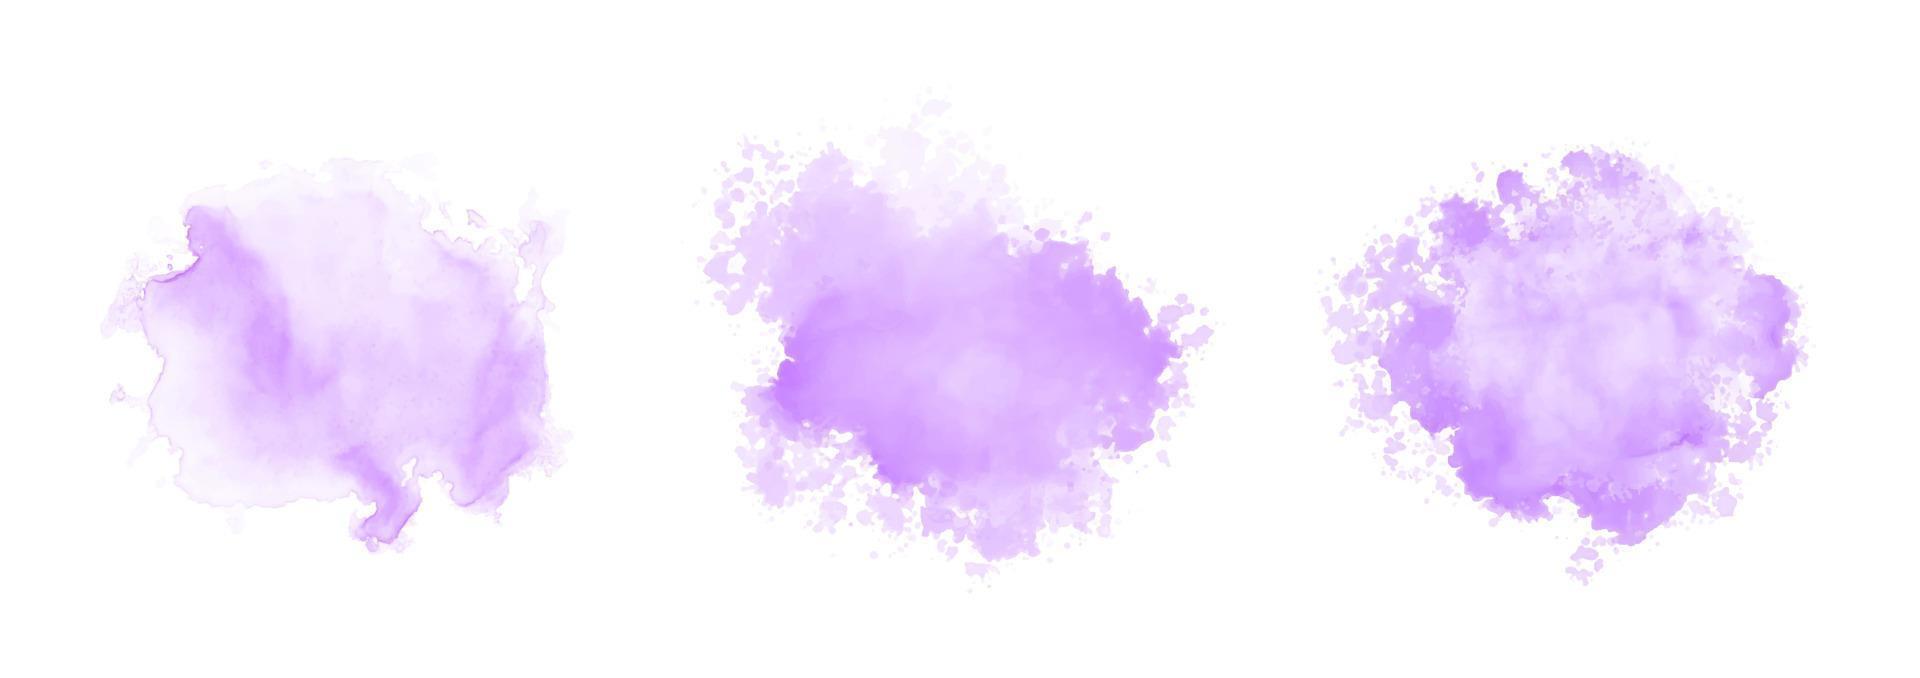 conjunto de salpicaduras de agua de acuarela púrpura abstracta sobre un fondo blanco vector